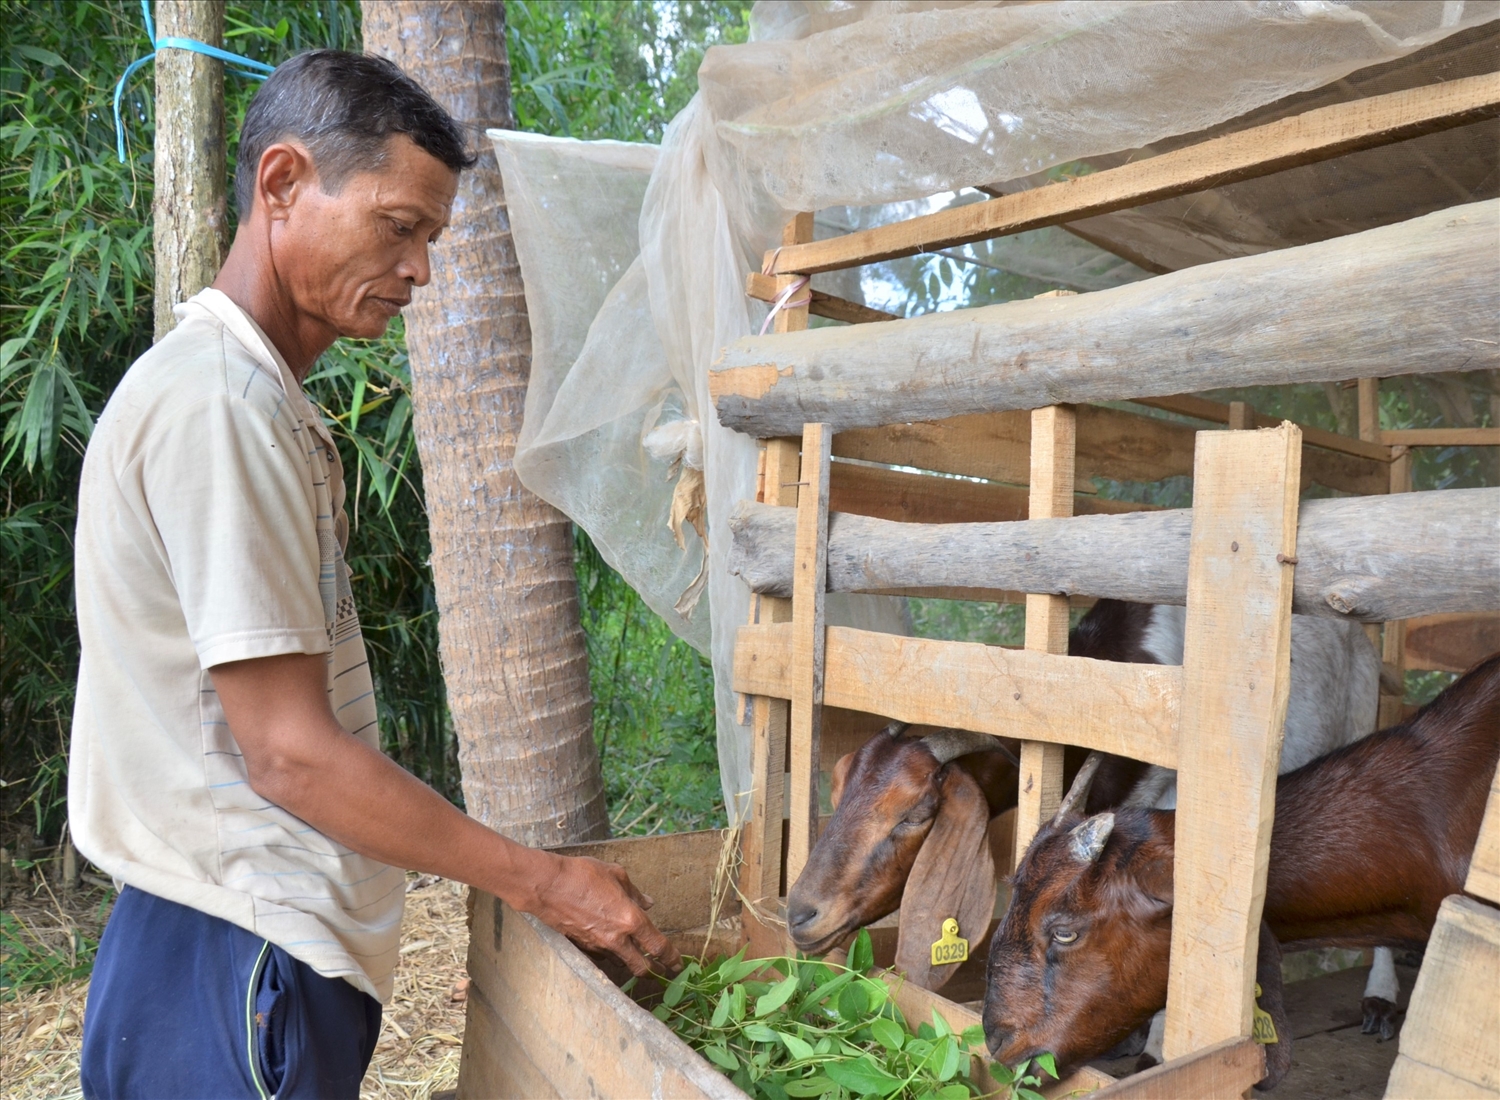 Mô hình nuôi dê từ đồng vốn tín dụng chính sách xã hội của hộ ông Danh Sua, ấp Tân Ðiền, xã Điền Hải (huyện Đông Hải) giúp gia đình thoát nghèo